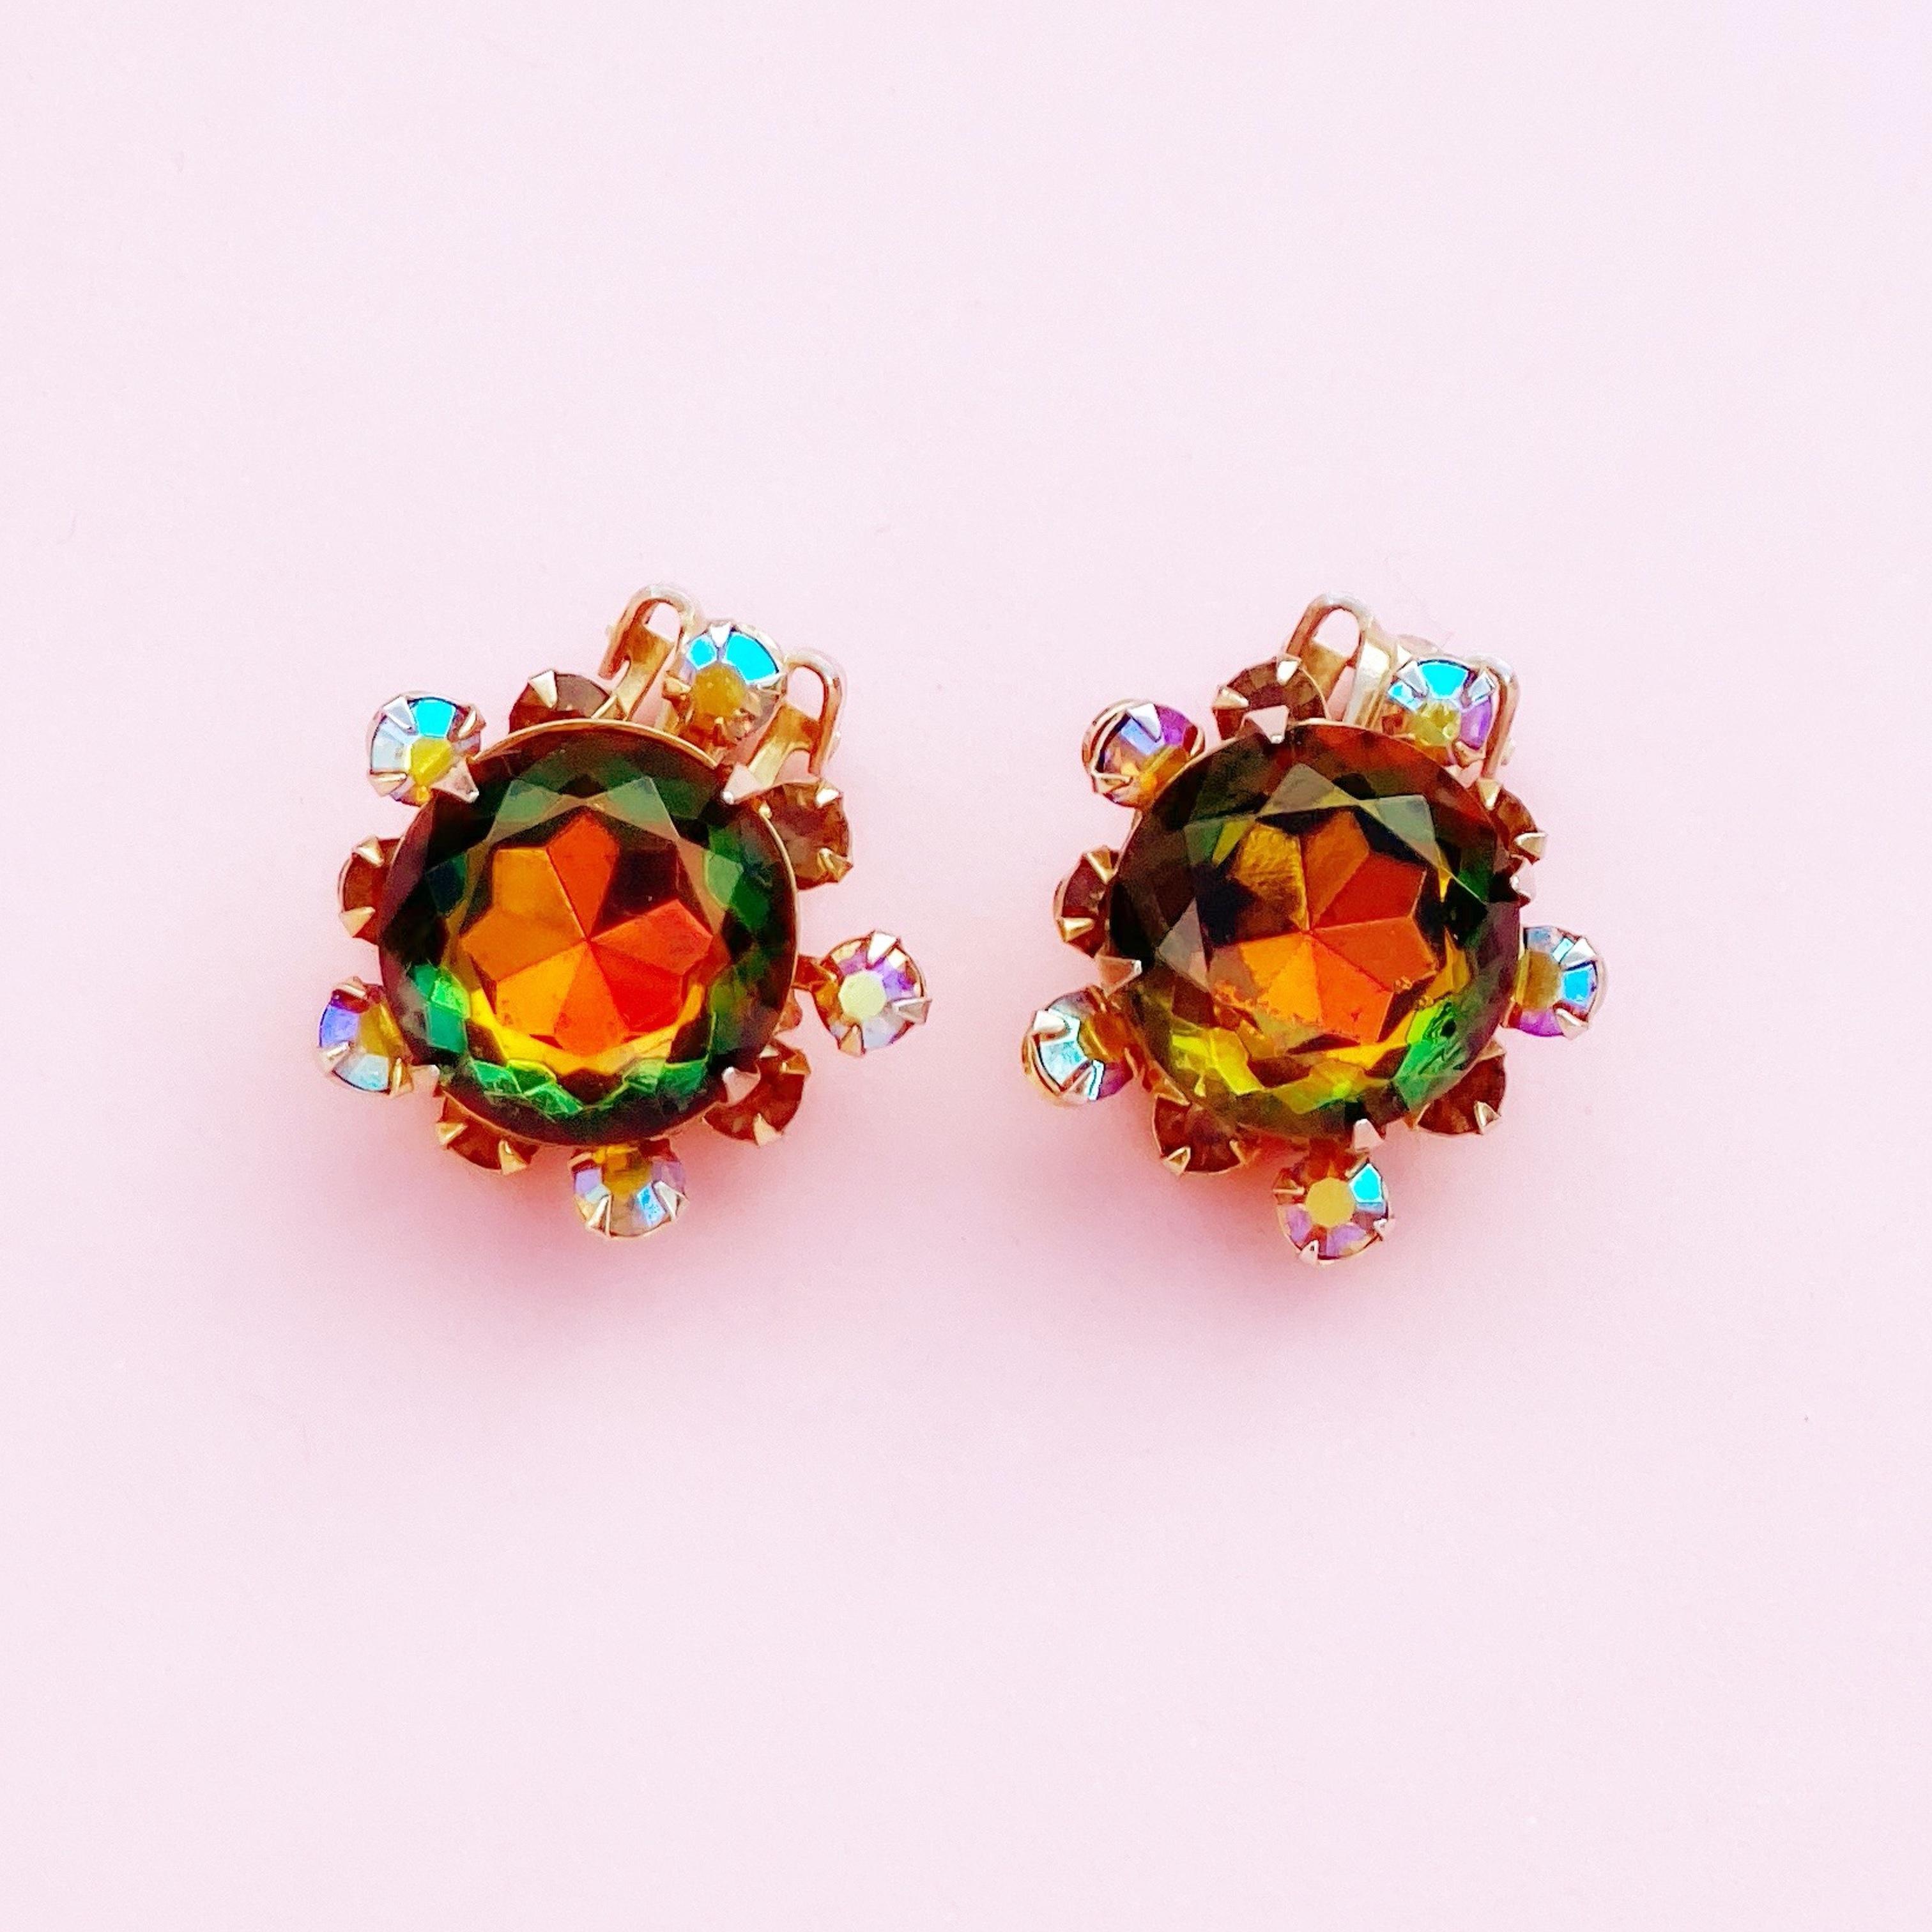 Modern Vitrail & Aurora Borealis Crystal Rhinestone Earrings by Beau Jewels, 1960s